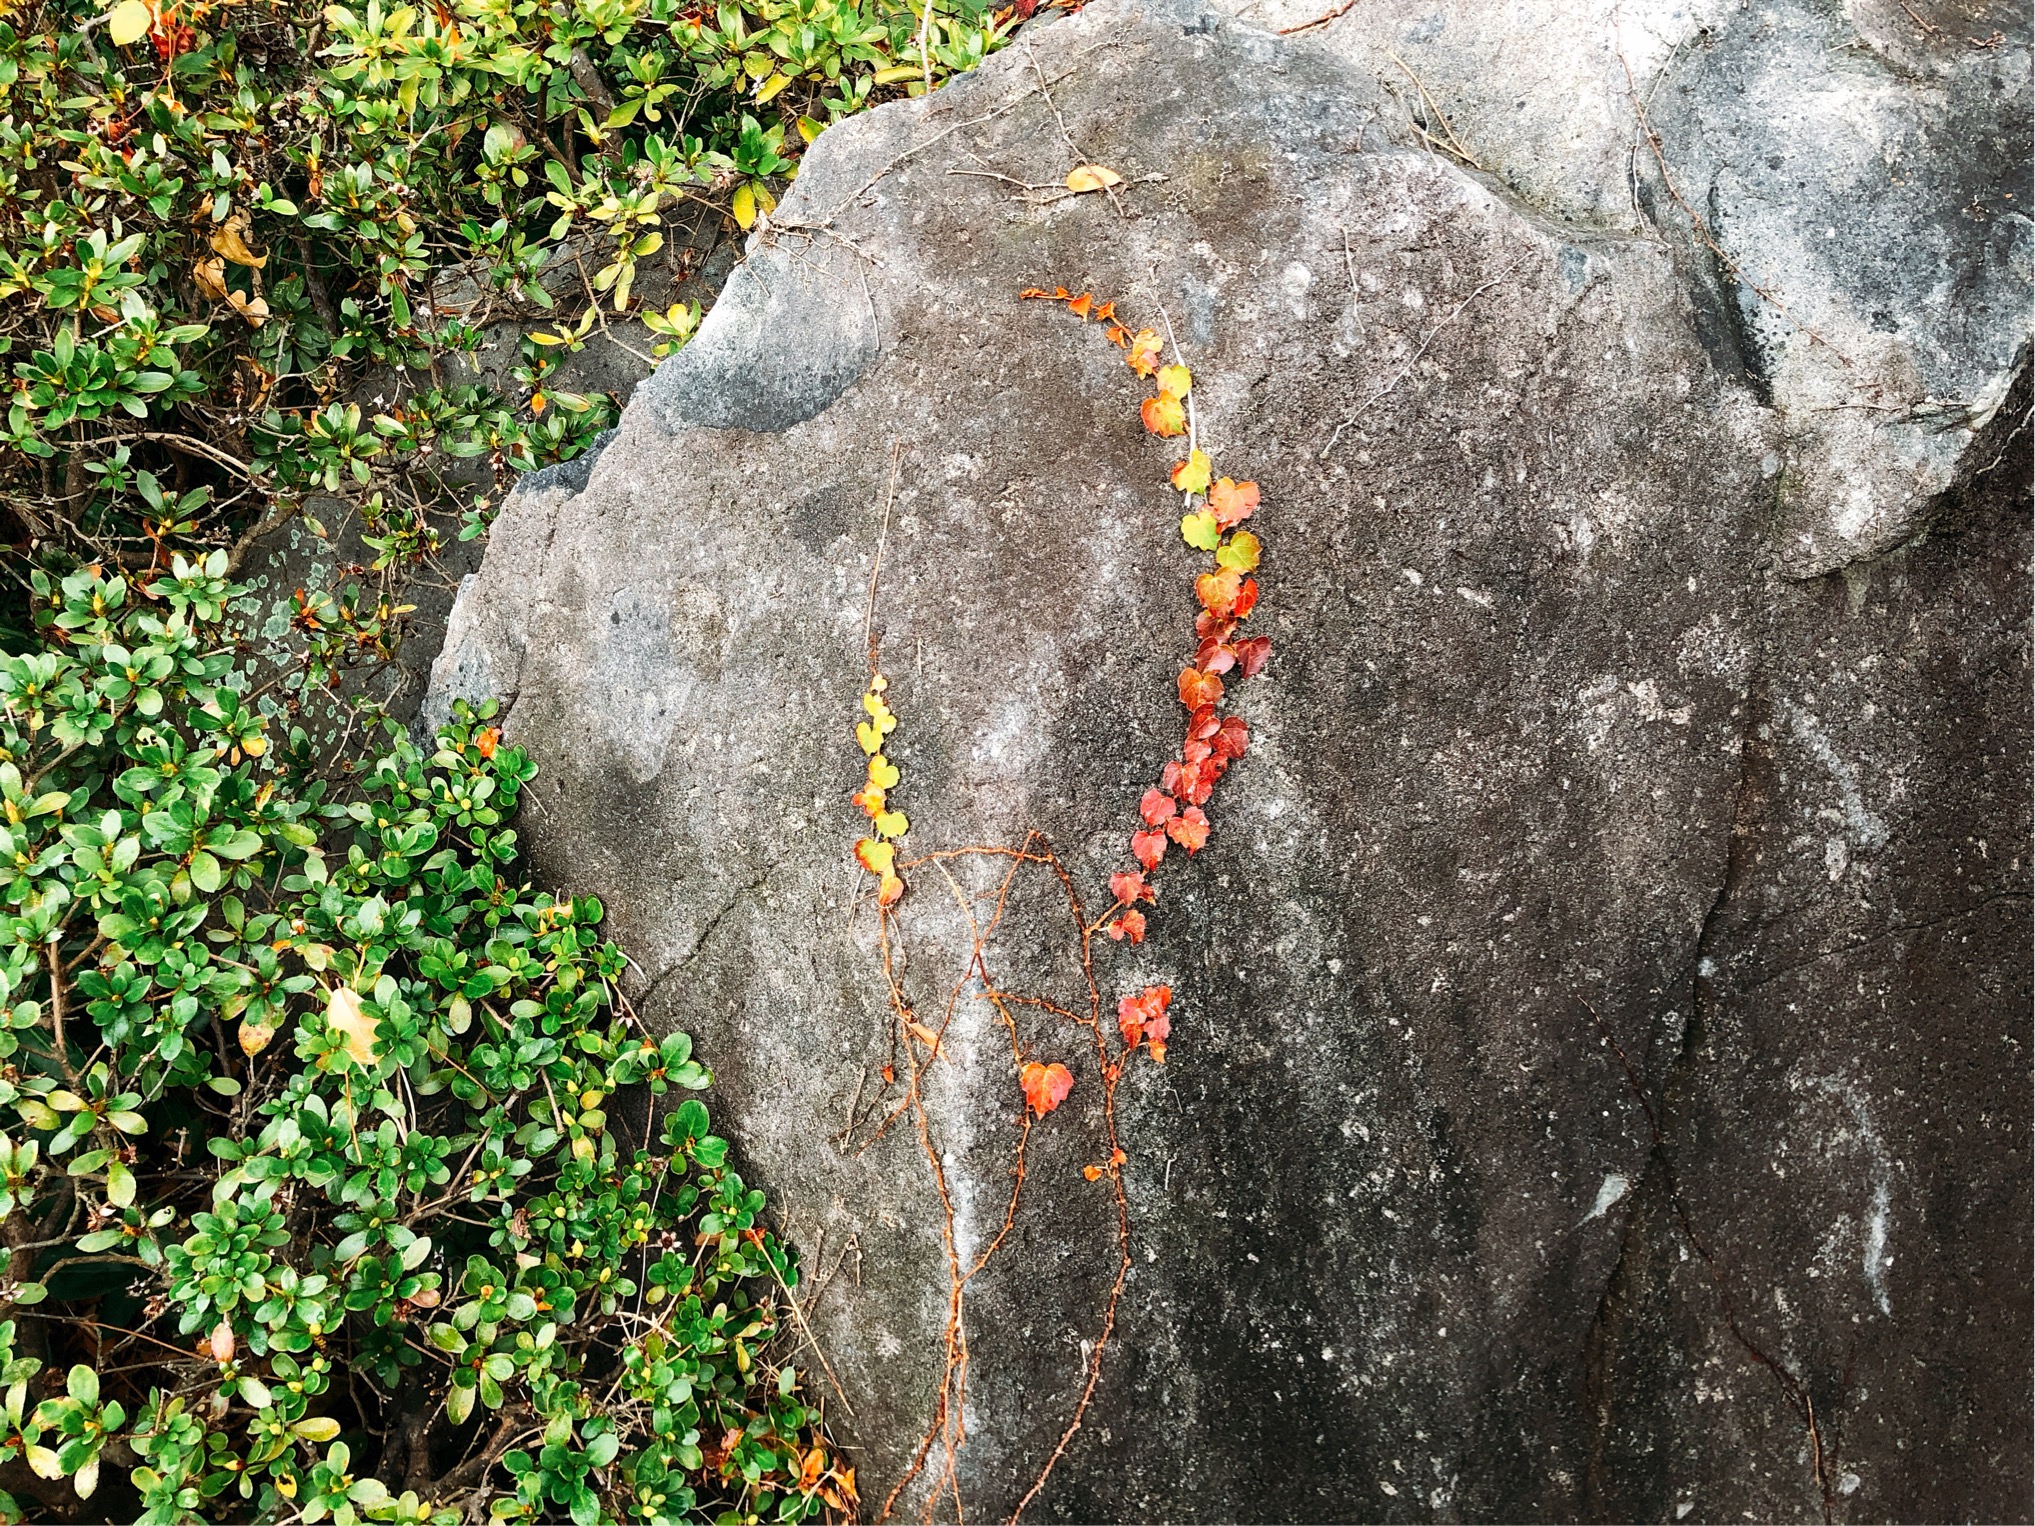 しおさい公園でみつけたもみじのネックレス。ごつごつした岩に紅葉したもみじがそっとかかっていて、可愛らしい。